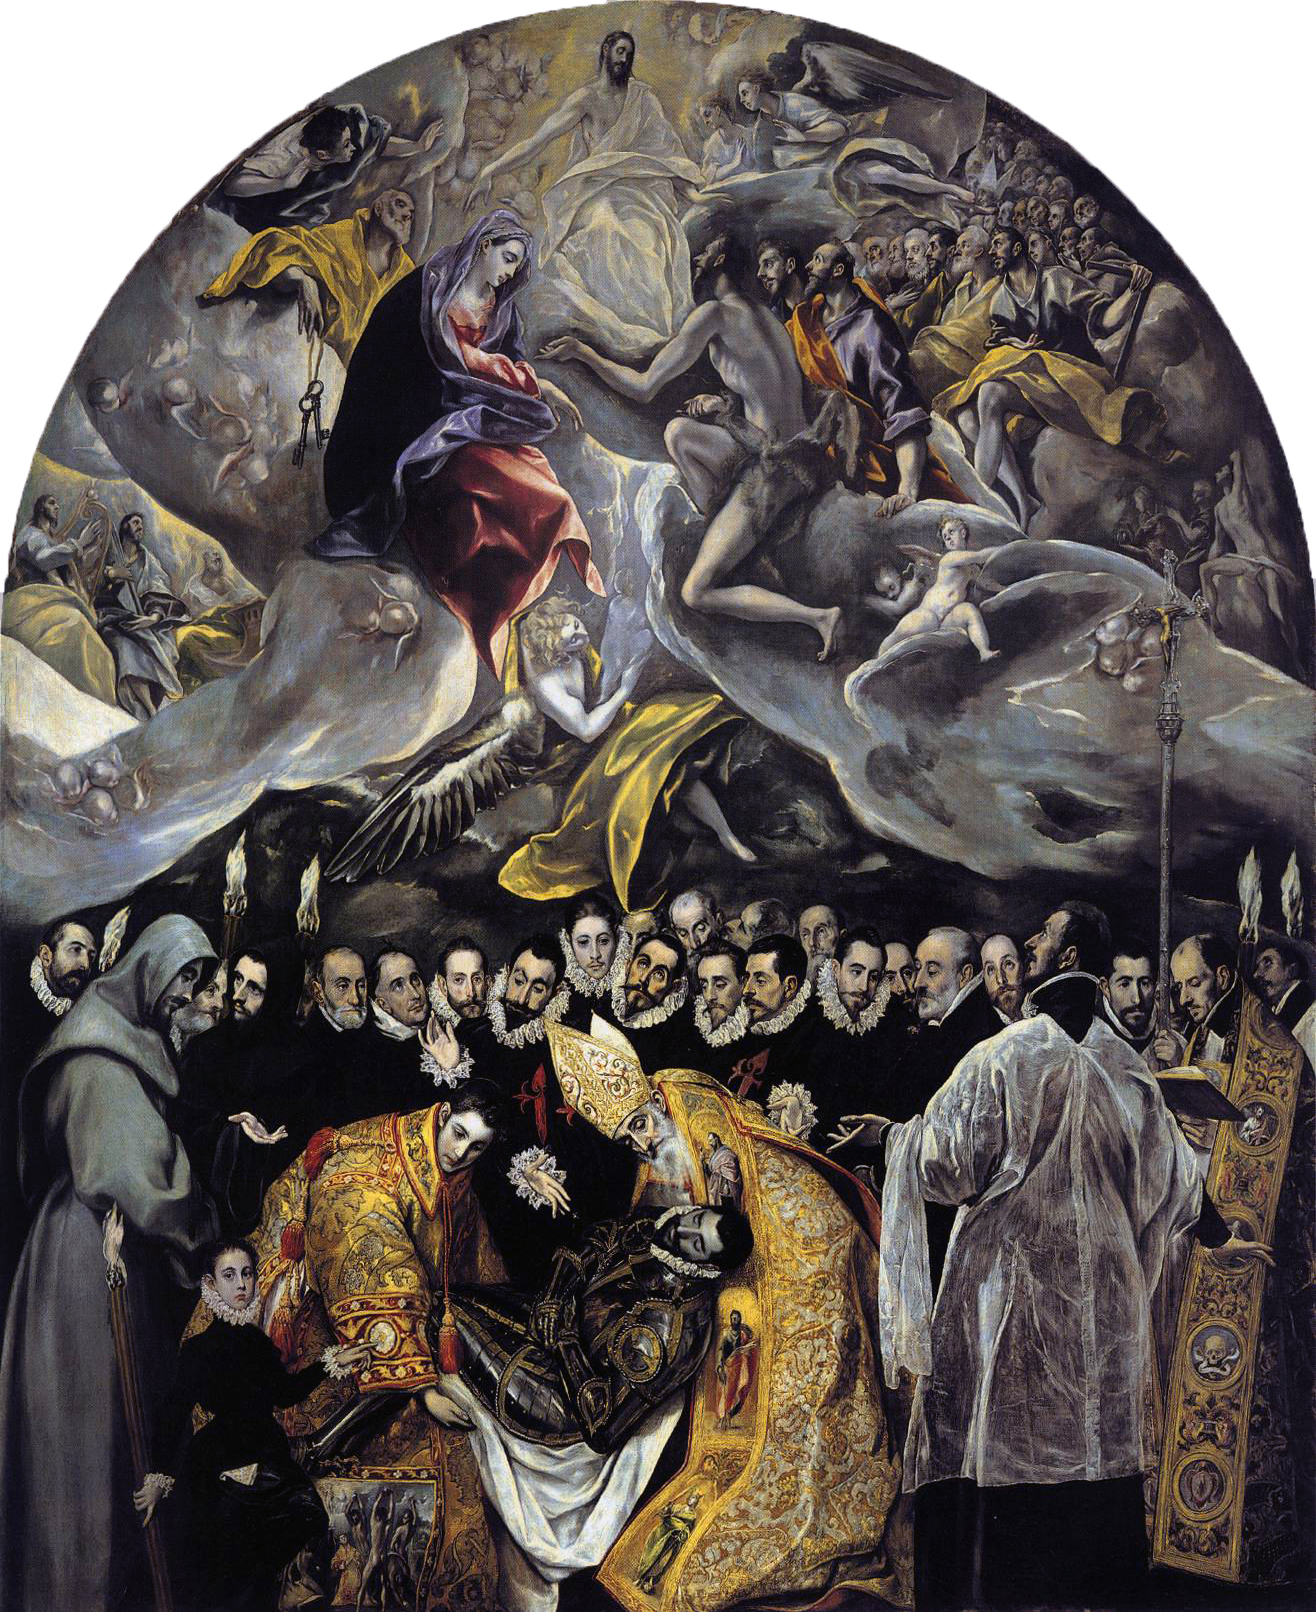 El Greco, Burial of Count Orgaz, 1586, oil on canvas, 460 × 360 cm (Santo Tomé, Toledo, Spain)